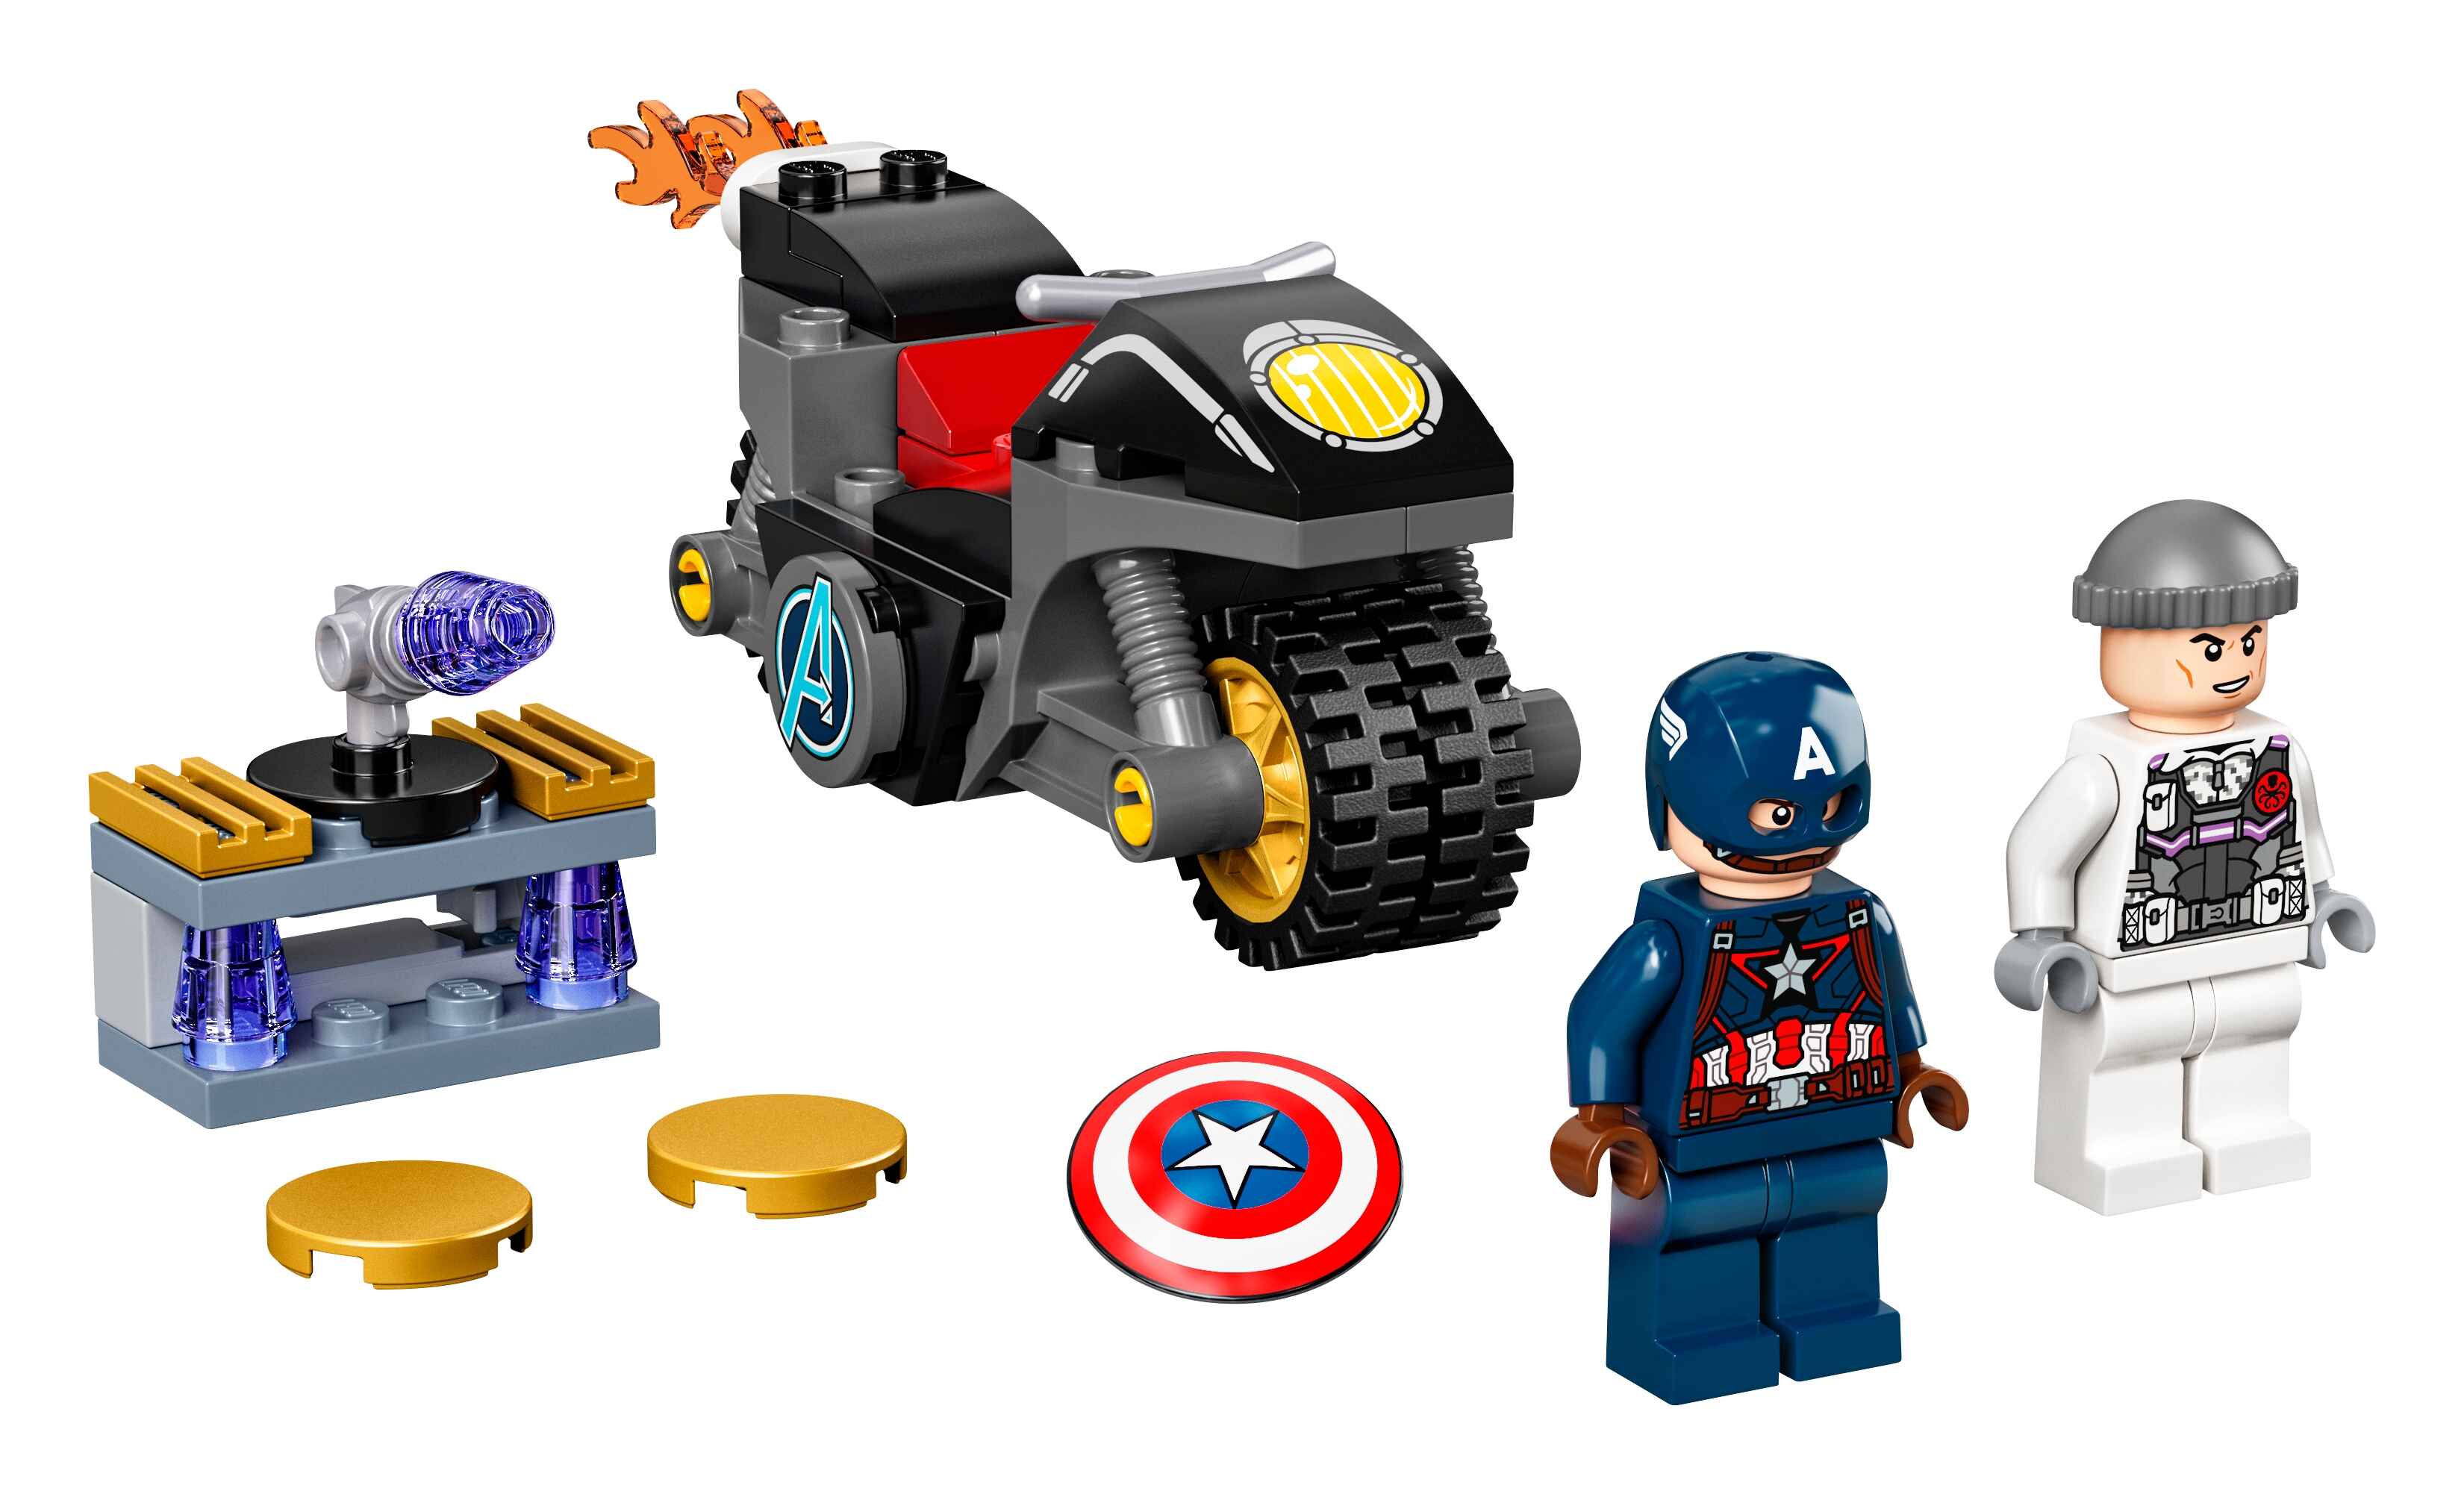 LEGO 76189 Marvel Super Heroes Duell zwischen Captain America und Hydra